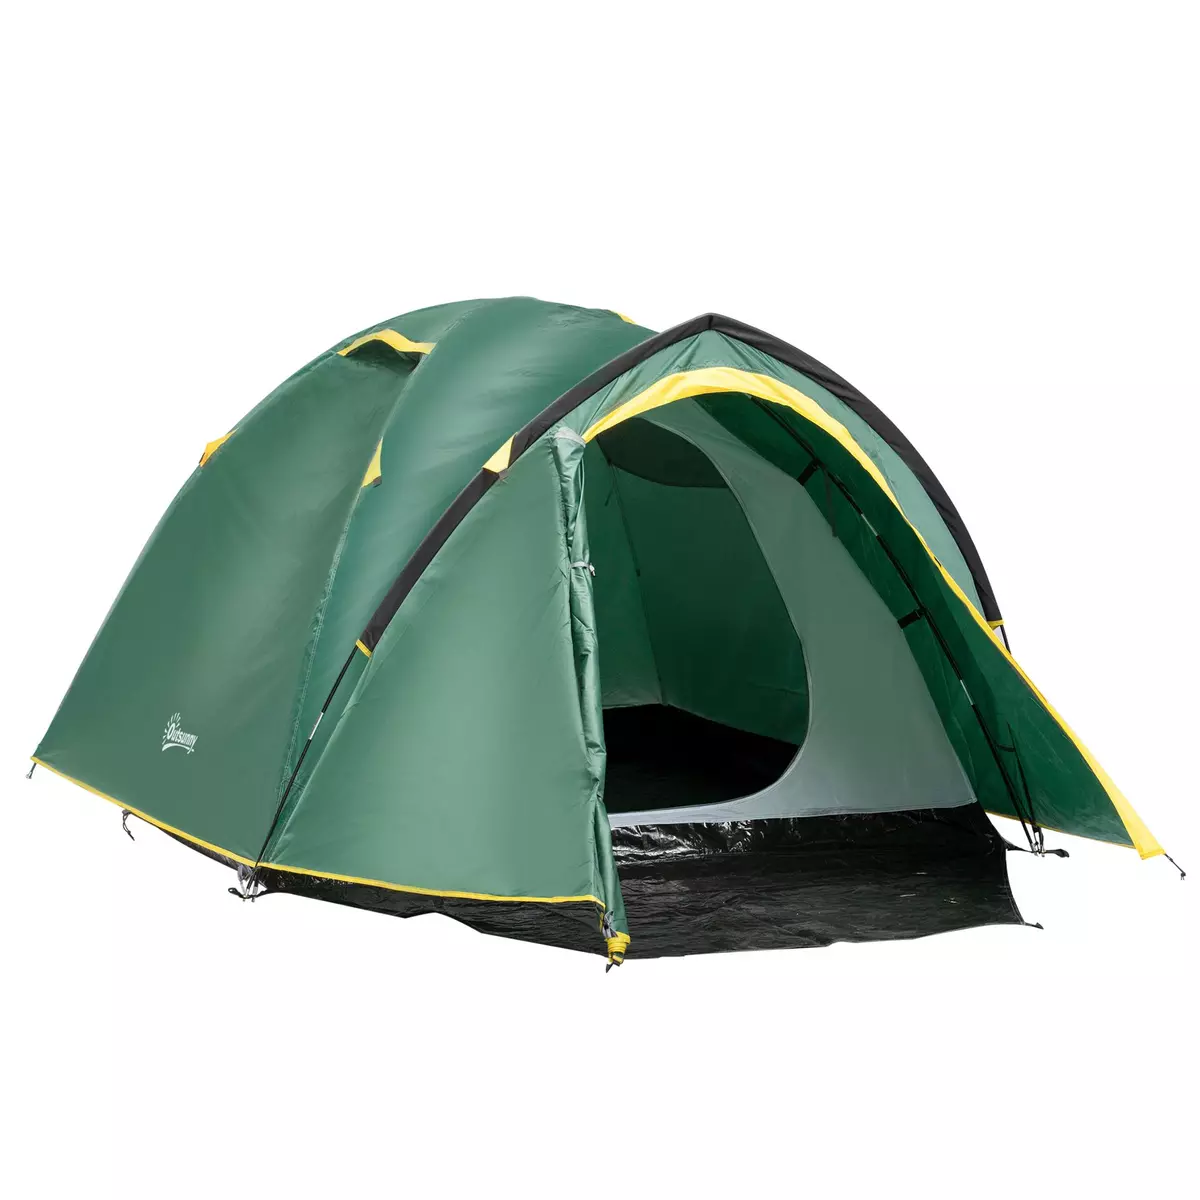 OUTSUNNY Tente de camping 2-3 personnes montage facile 2 portes fenêtres dim. 3,25L x 1,83l x 1,3H m fibre verre polyester PE vert